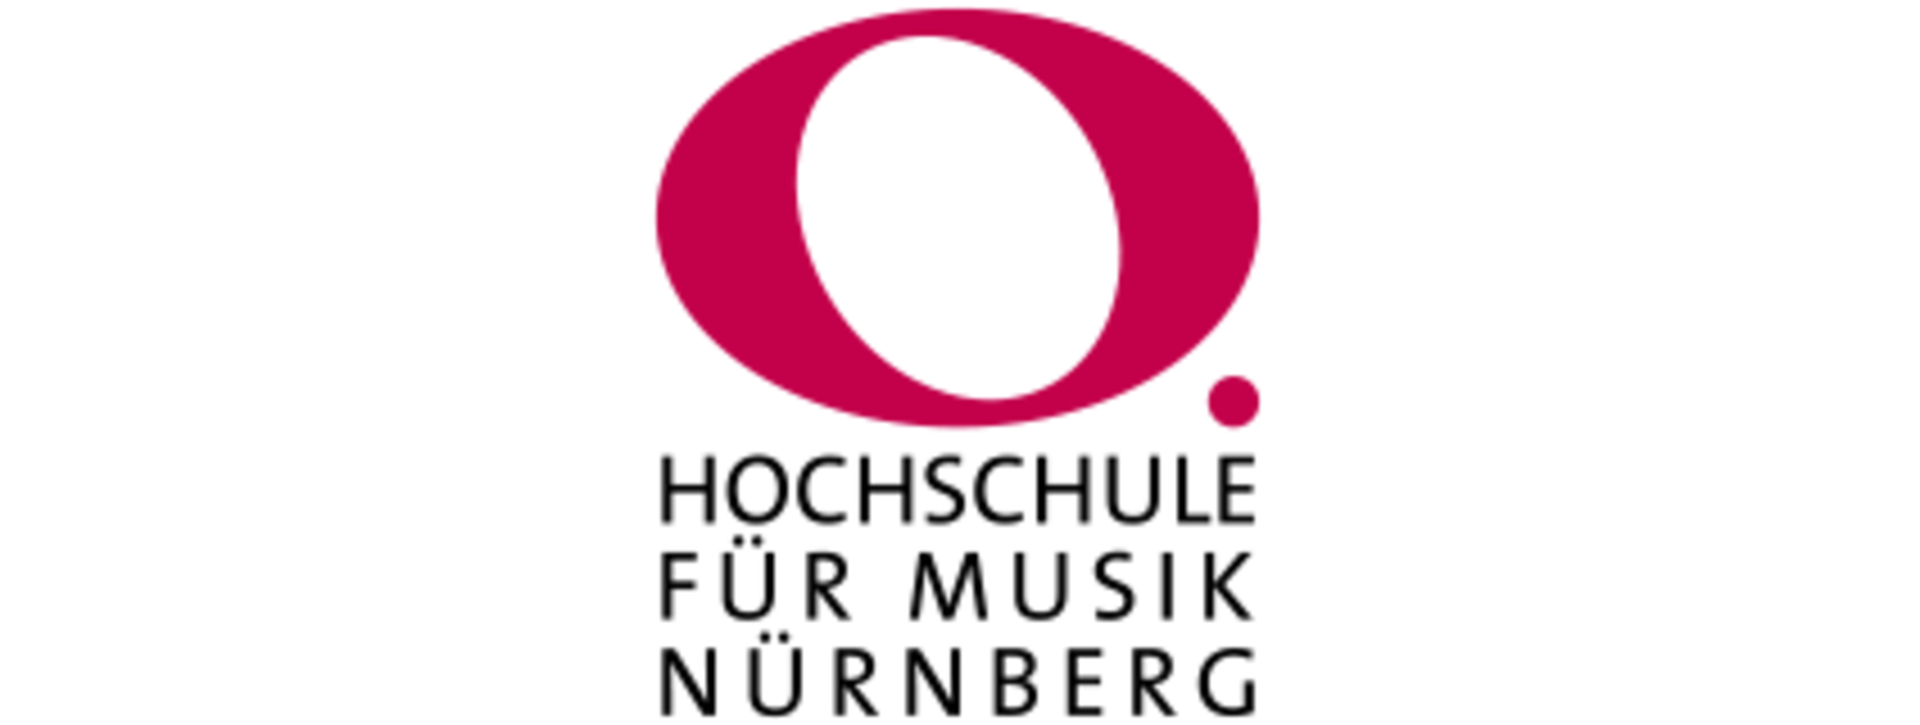 Hochschulberatung - Hochschule für Musik Nürnberg